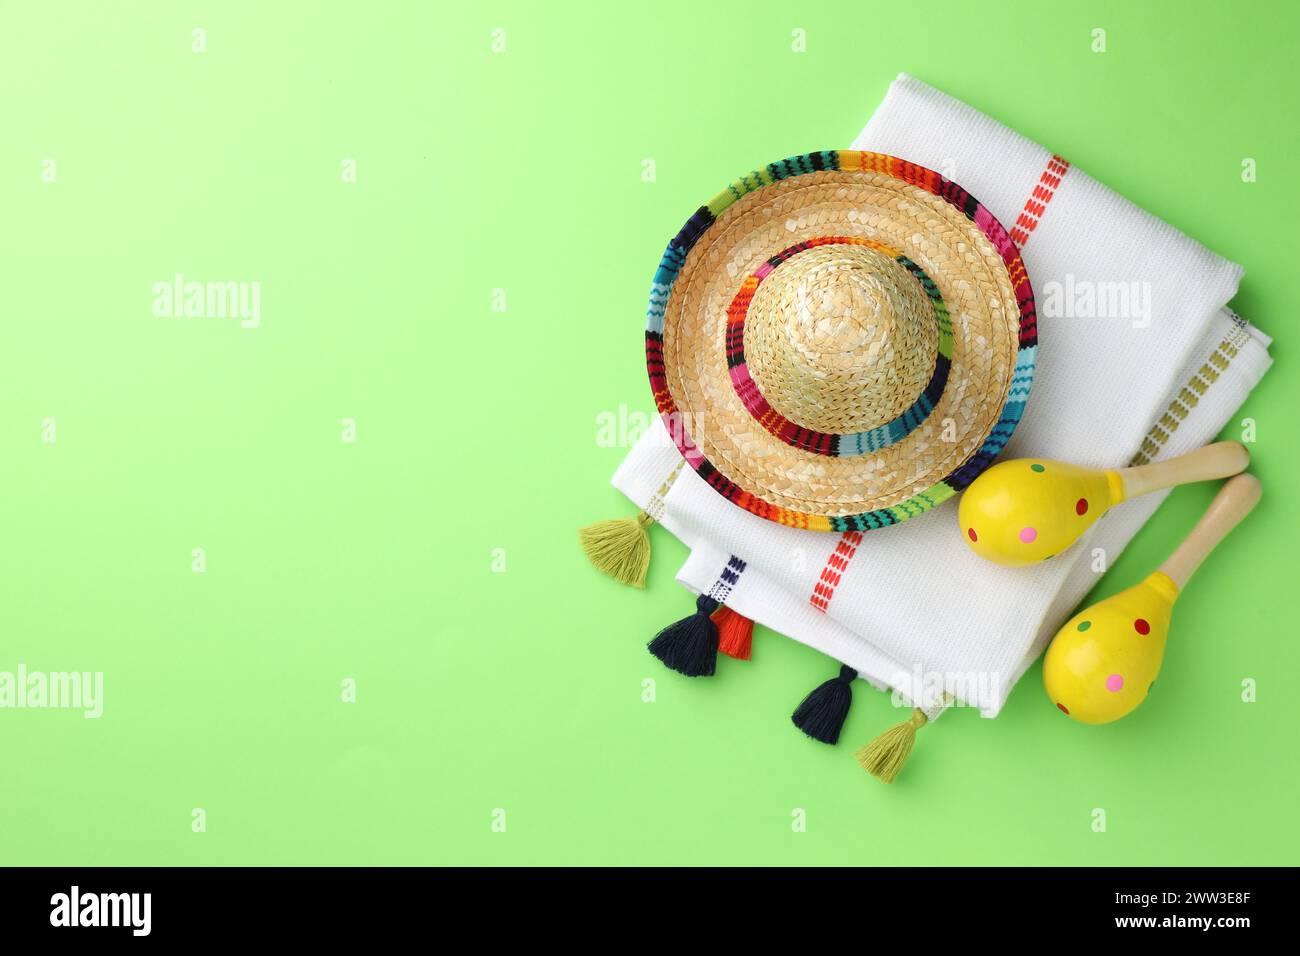 Chapeau sombrero mexicain, maracas et poncho sur fond vert, plat. Espace pour le texte Banque D'Images